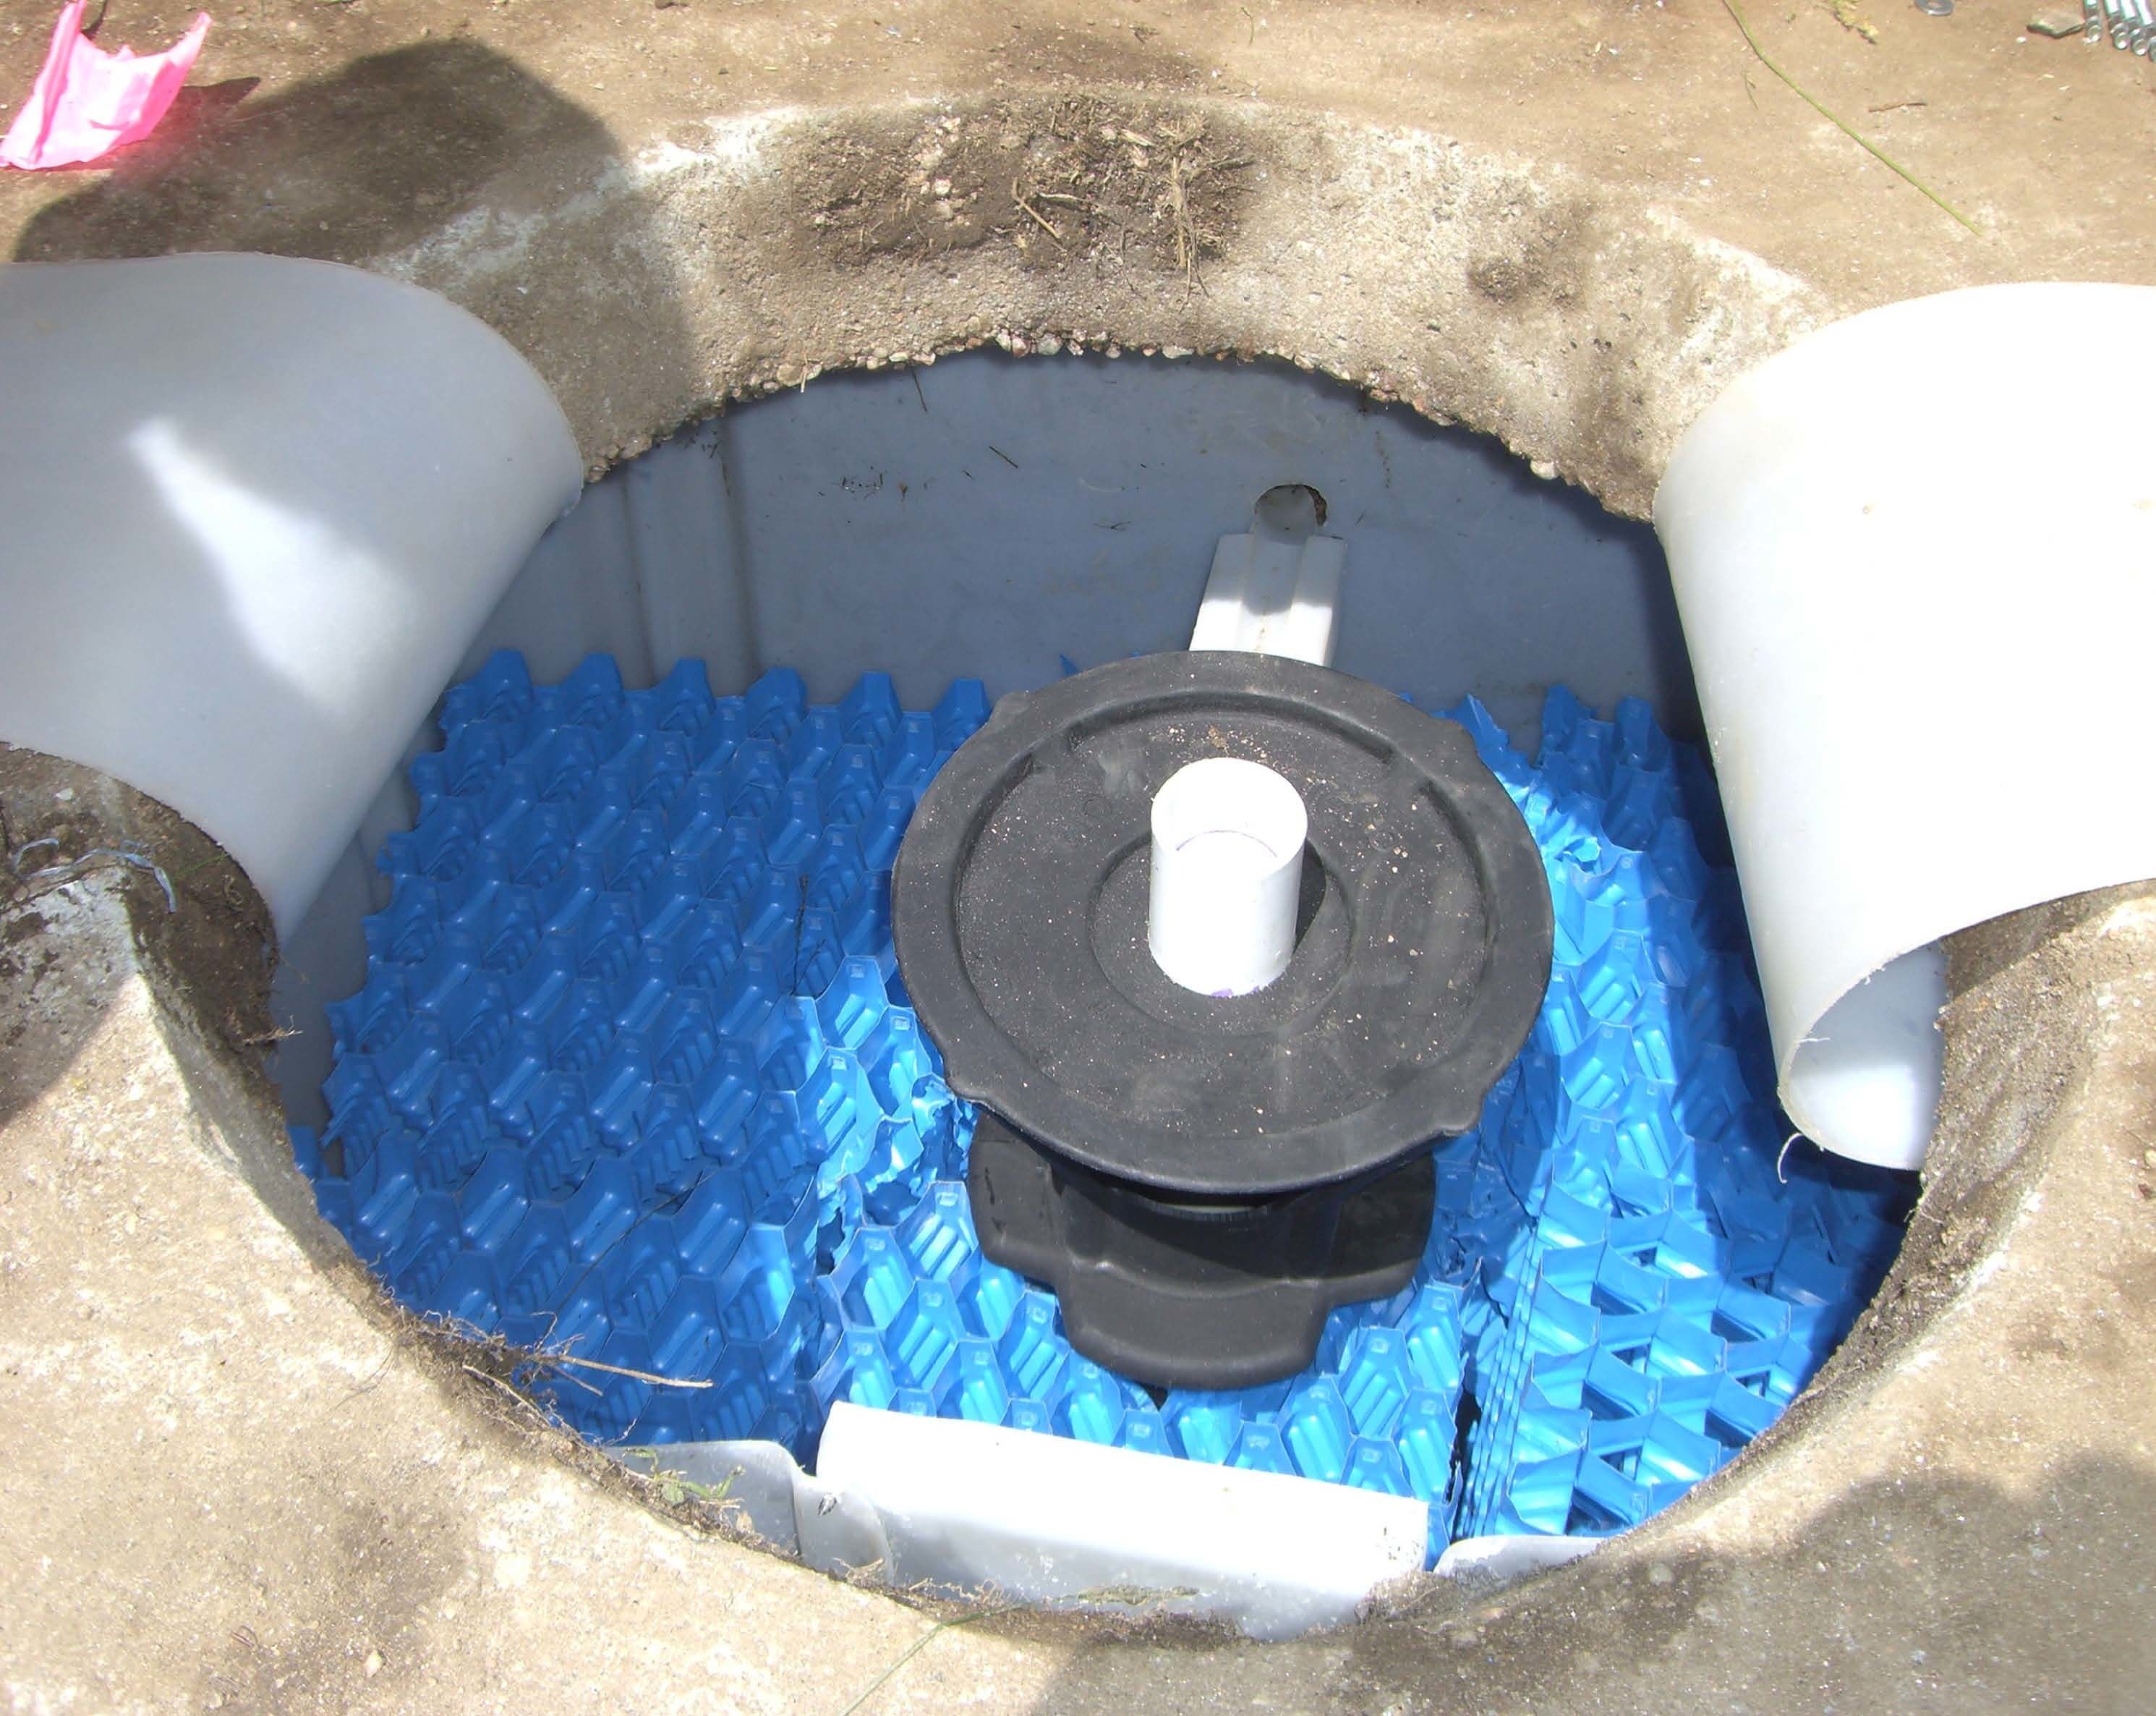 Visuel de RetroFAST - Amélioration du système septique Filtre aérobie pour fosse septique